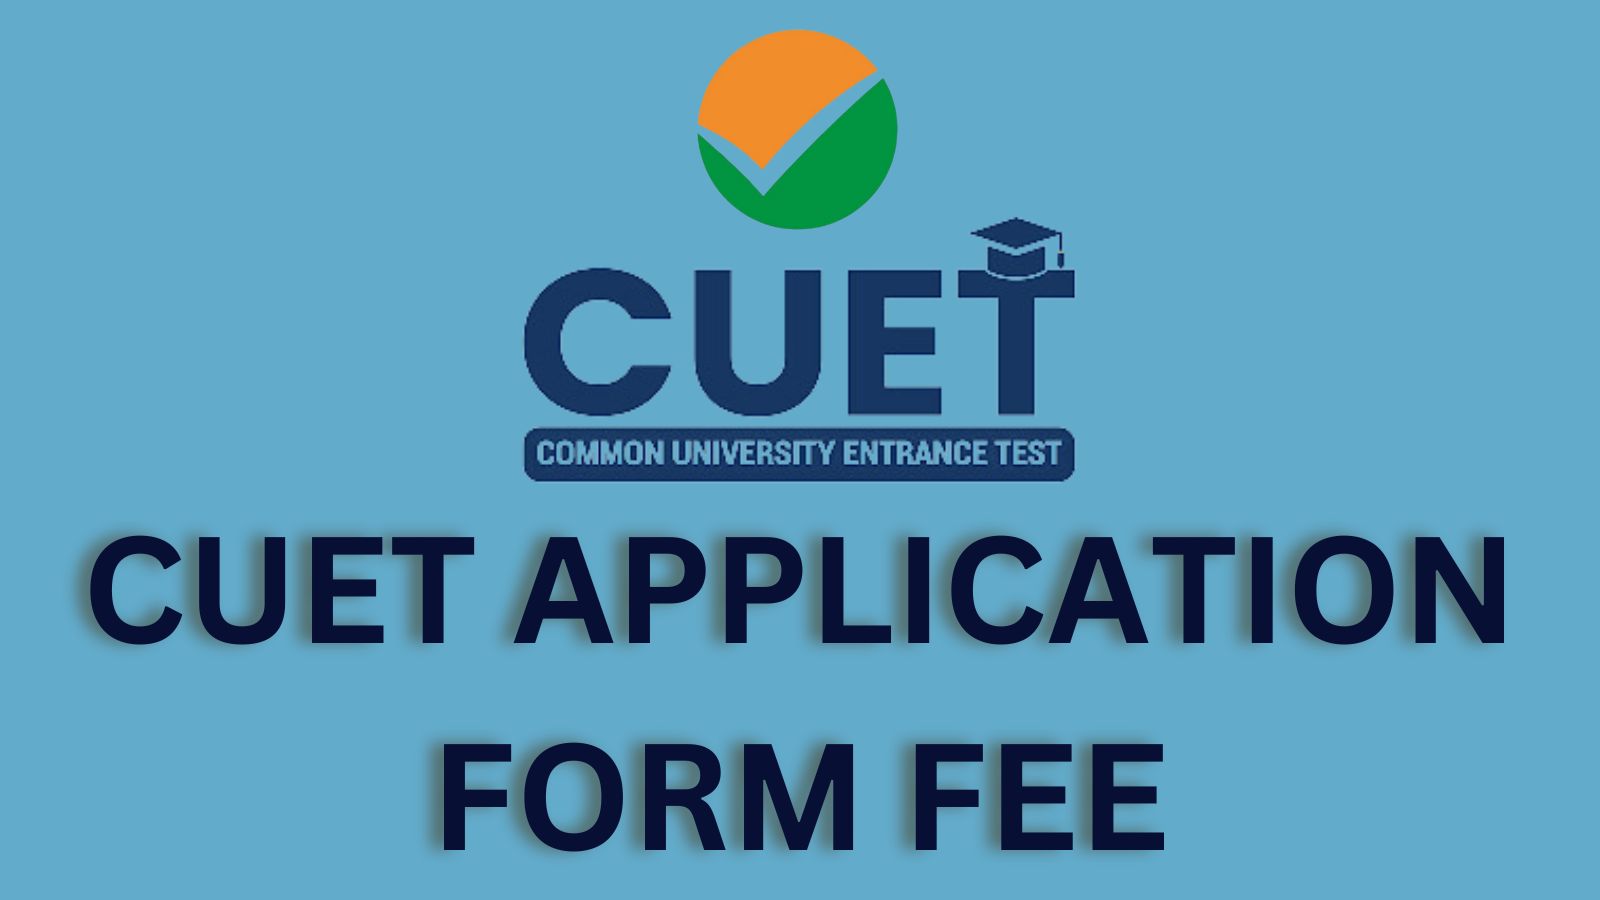 CUET application form fee